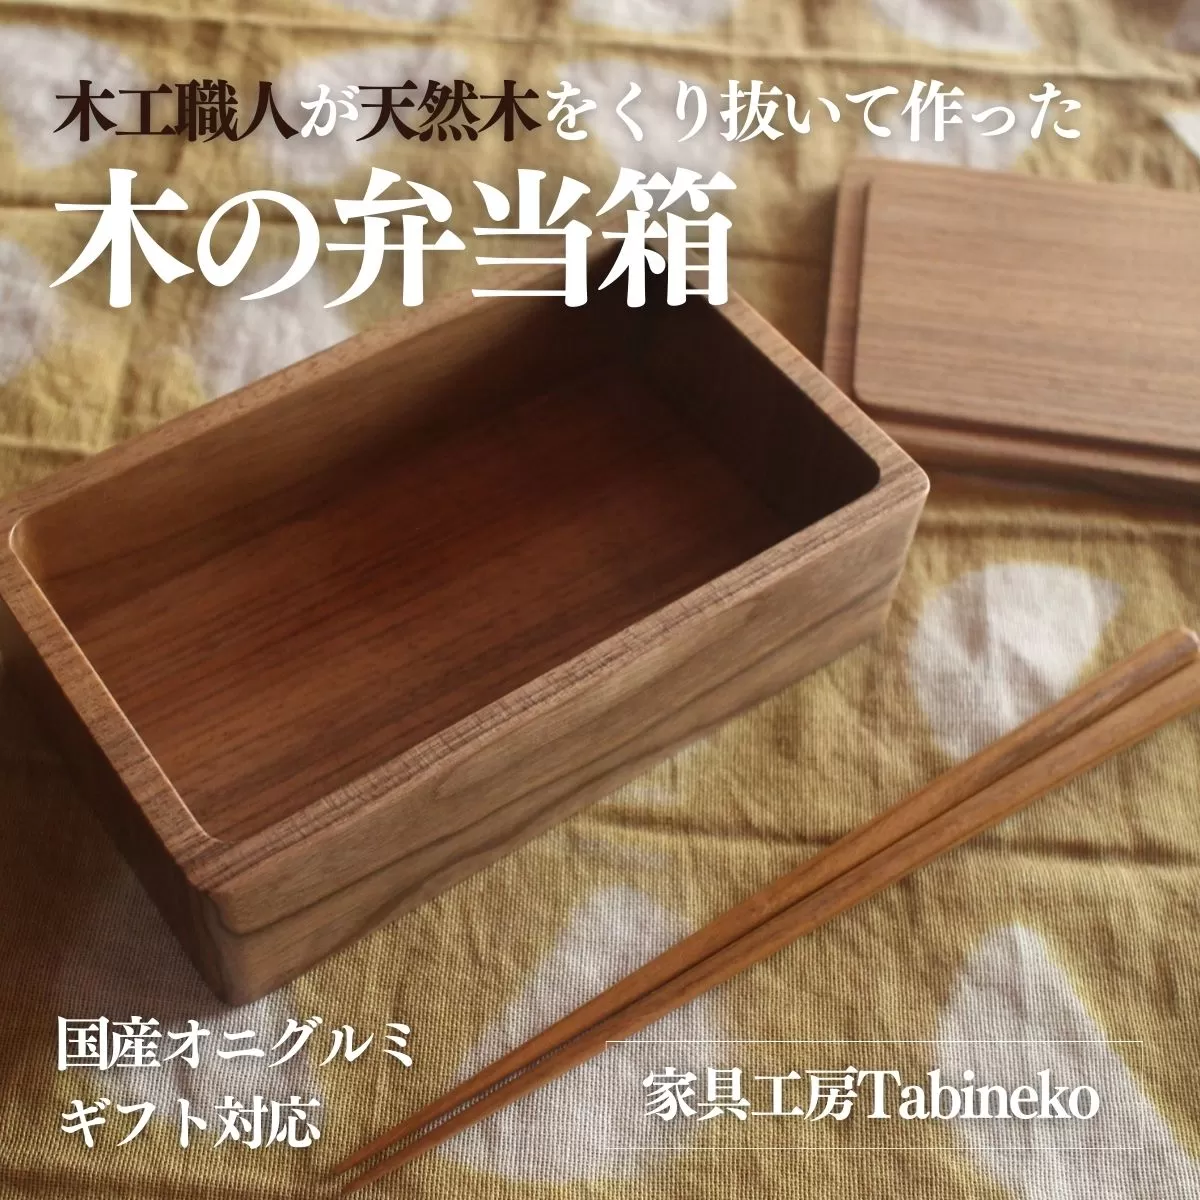 木の弁当箱（国産オニグルミ）ギフト対応 SMAO002